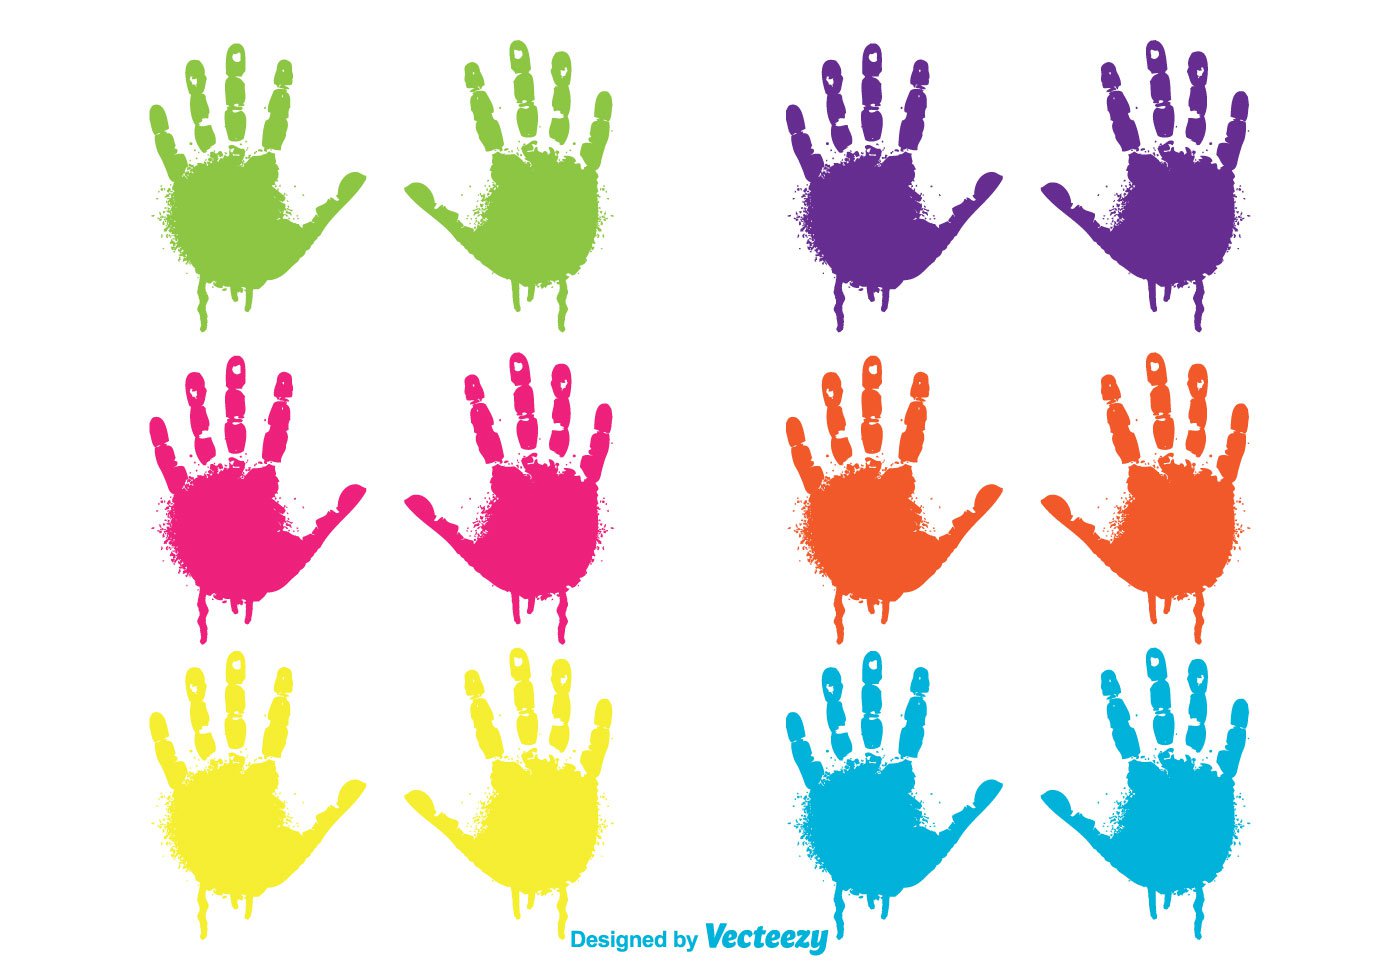 Painted Child Handprint Vectors - Download Free Vector Art, Stock ...